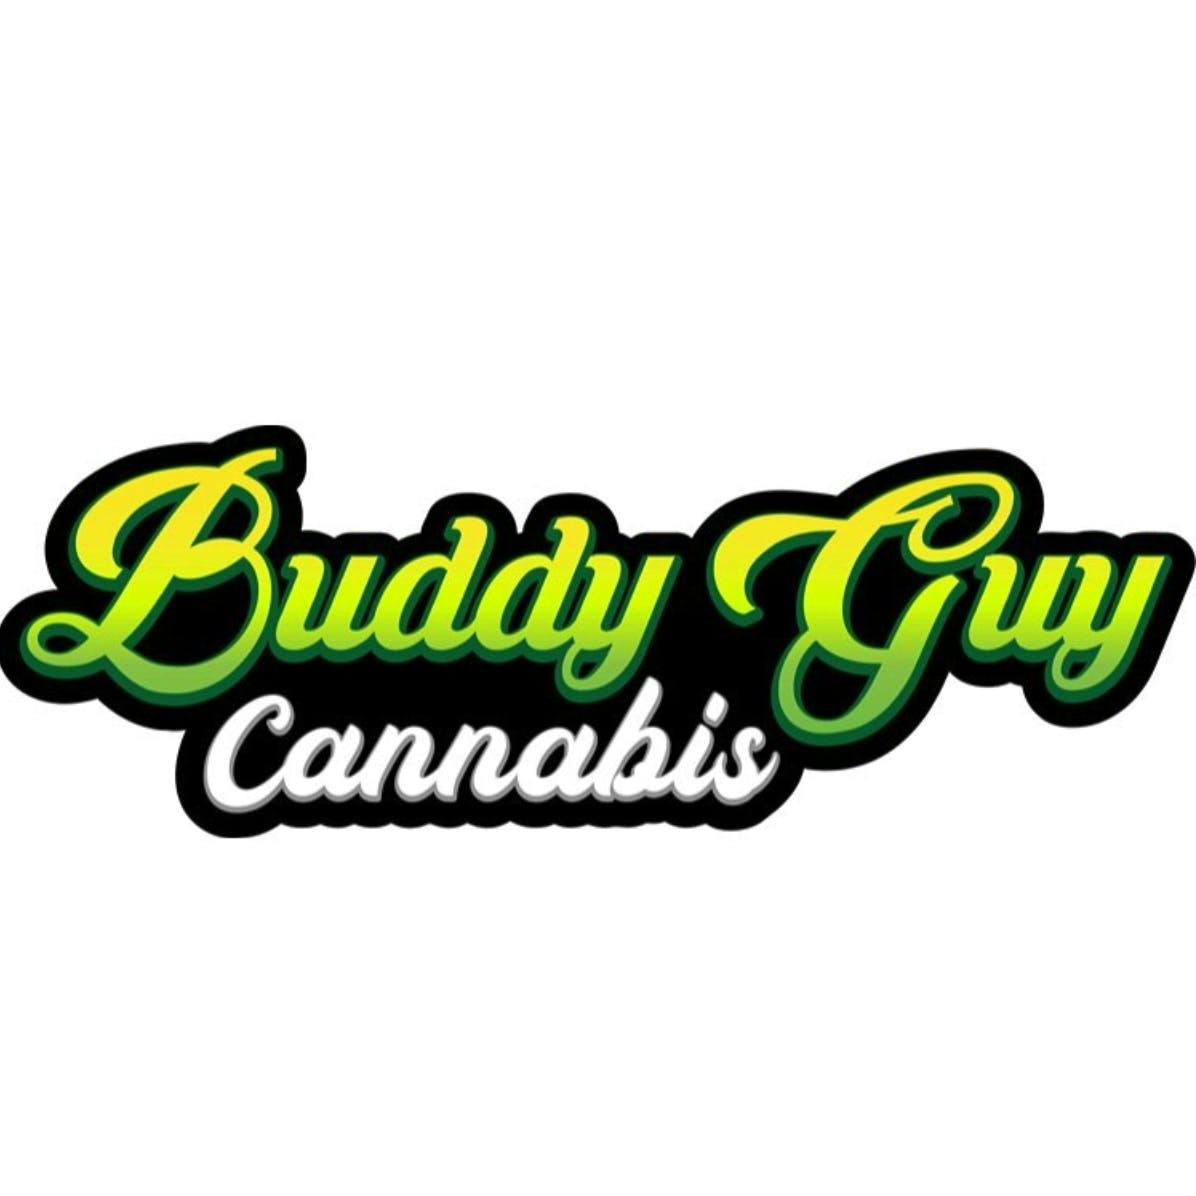 Buddy Guy Cannabis